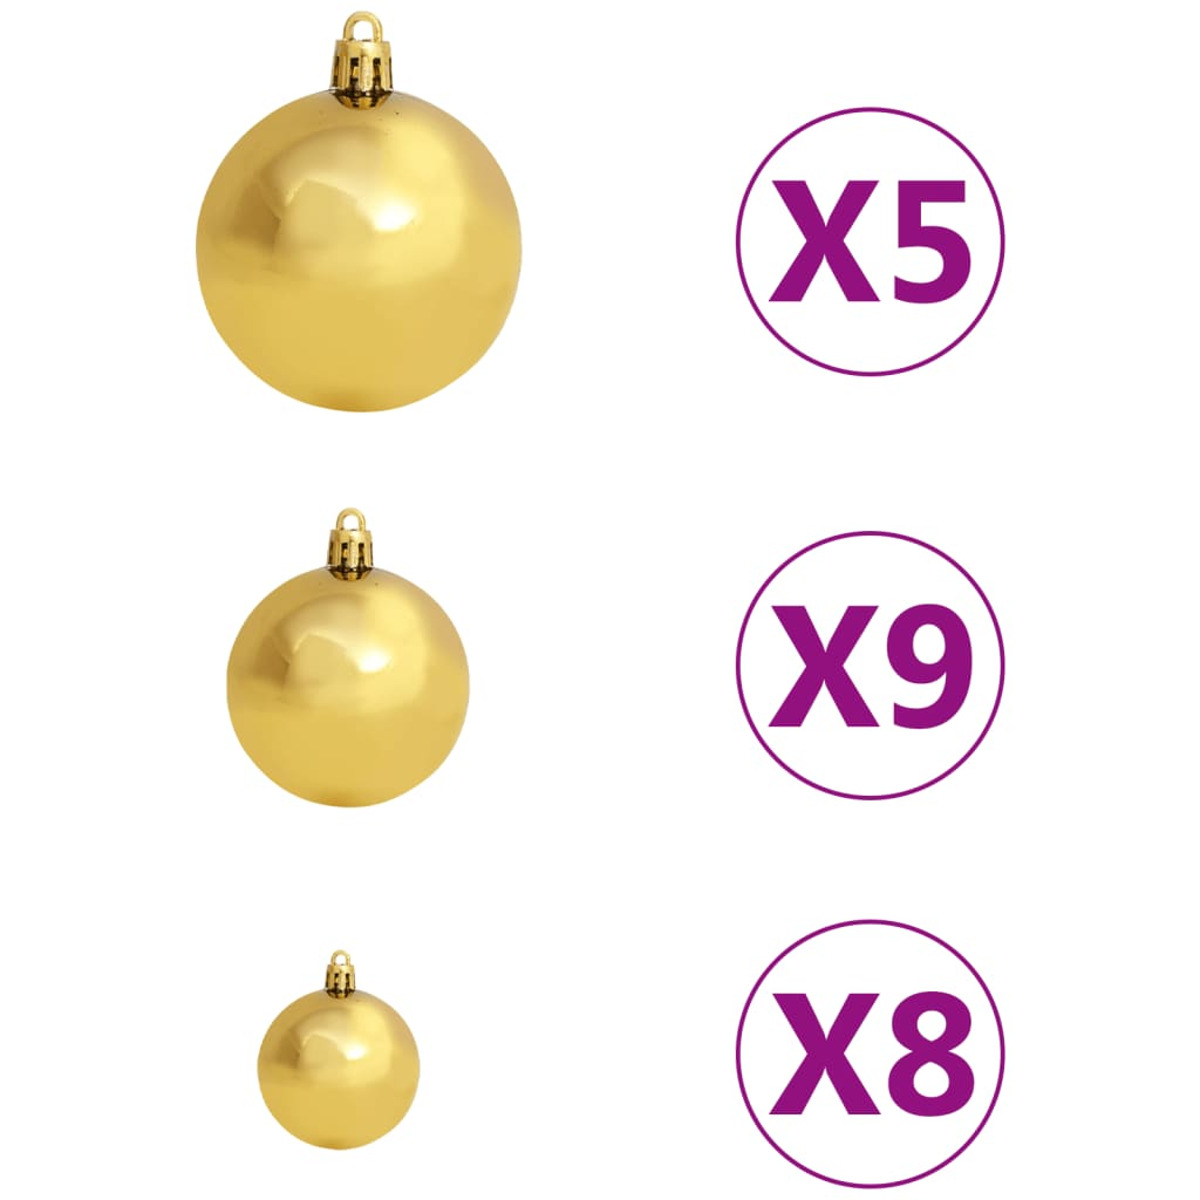 Weihnachtsbaum VIDAXL 3077489